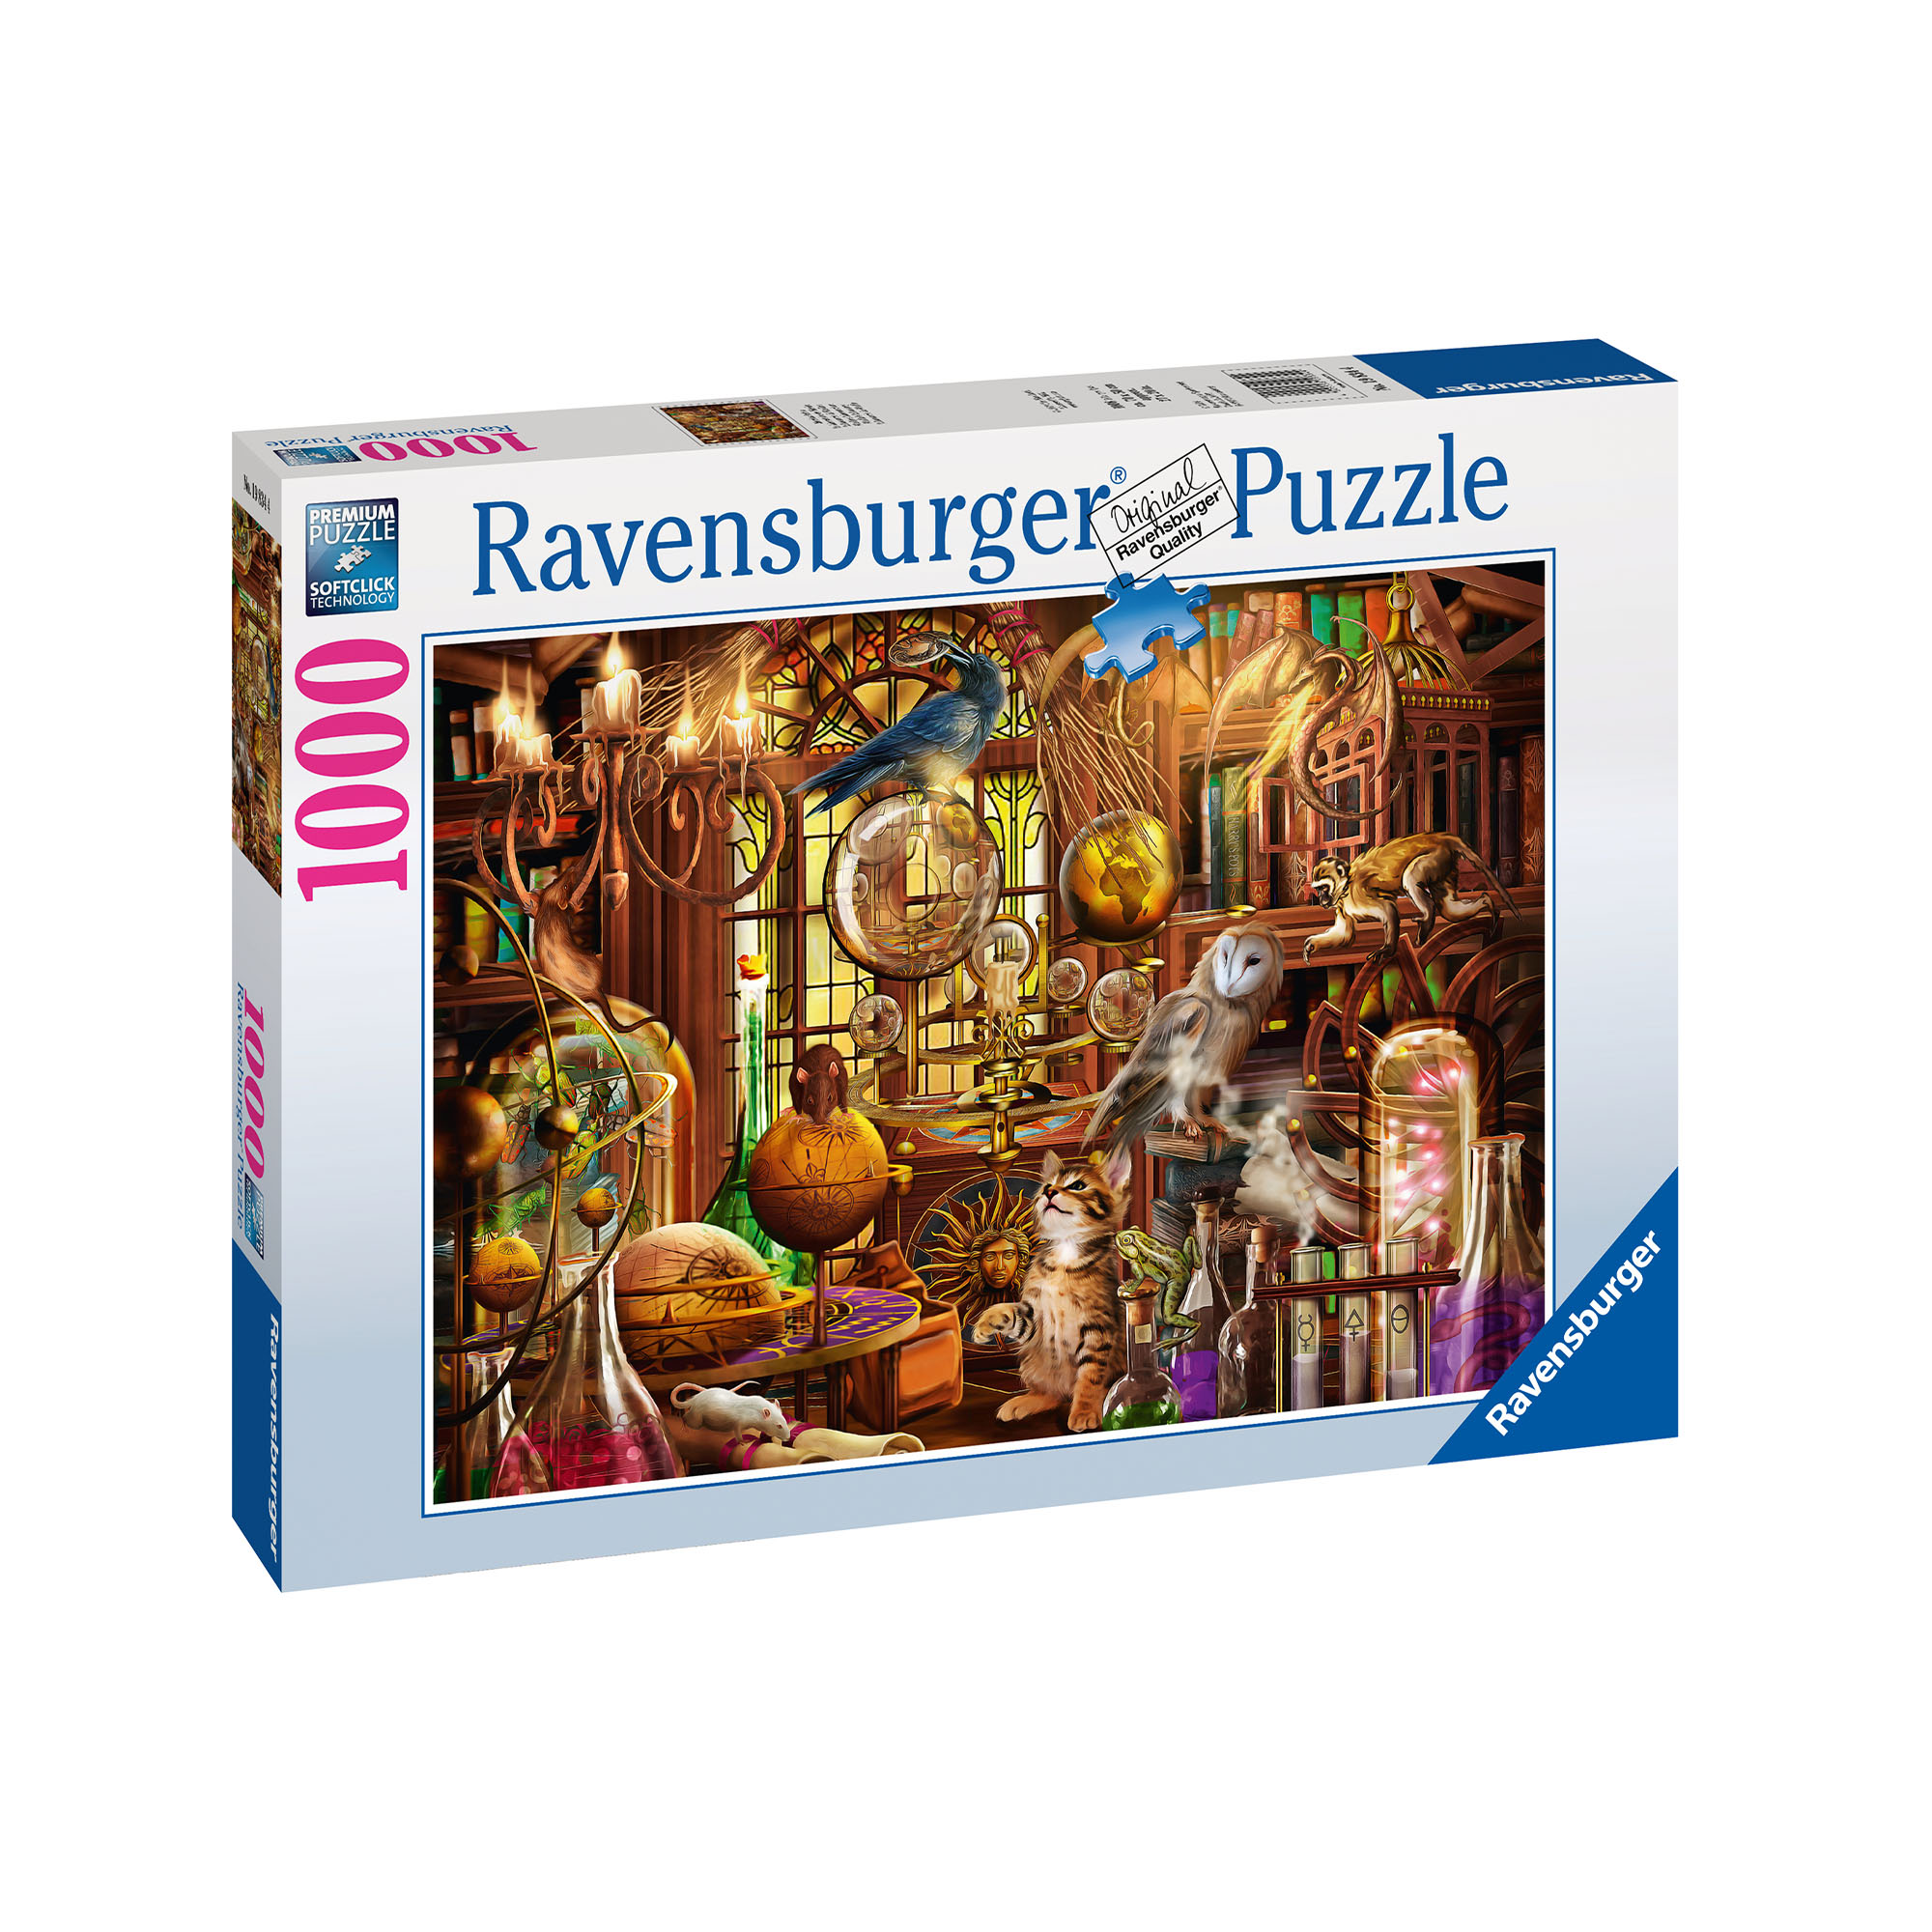 Ravensburger Puzzle 1000 pezzi 19834 Laboratorio Di Merlino